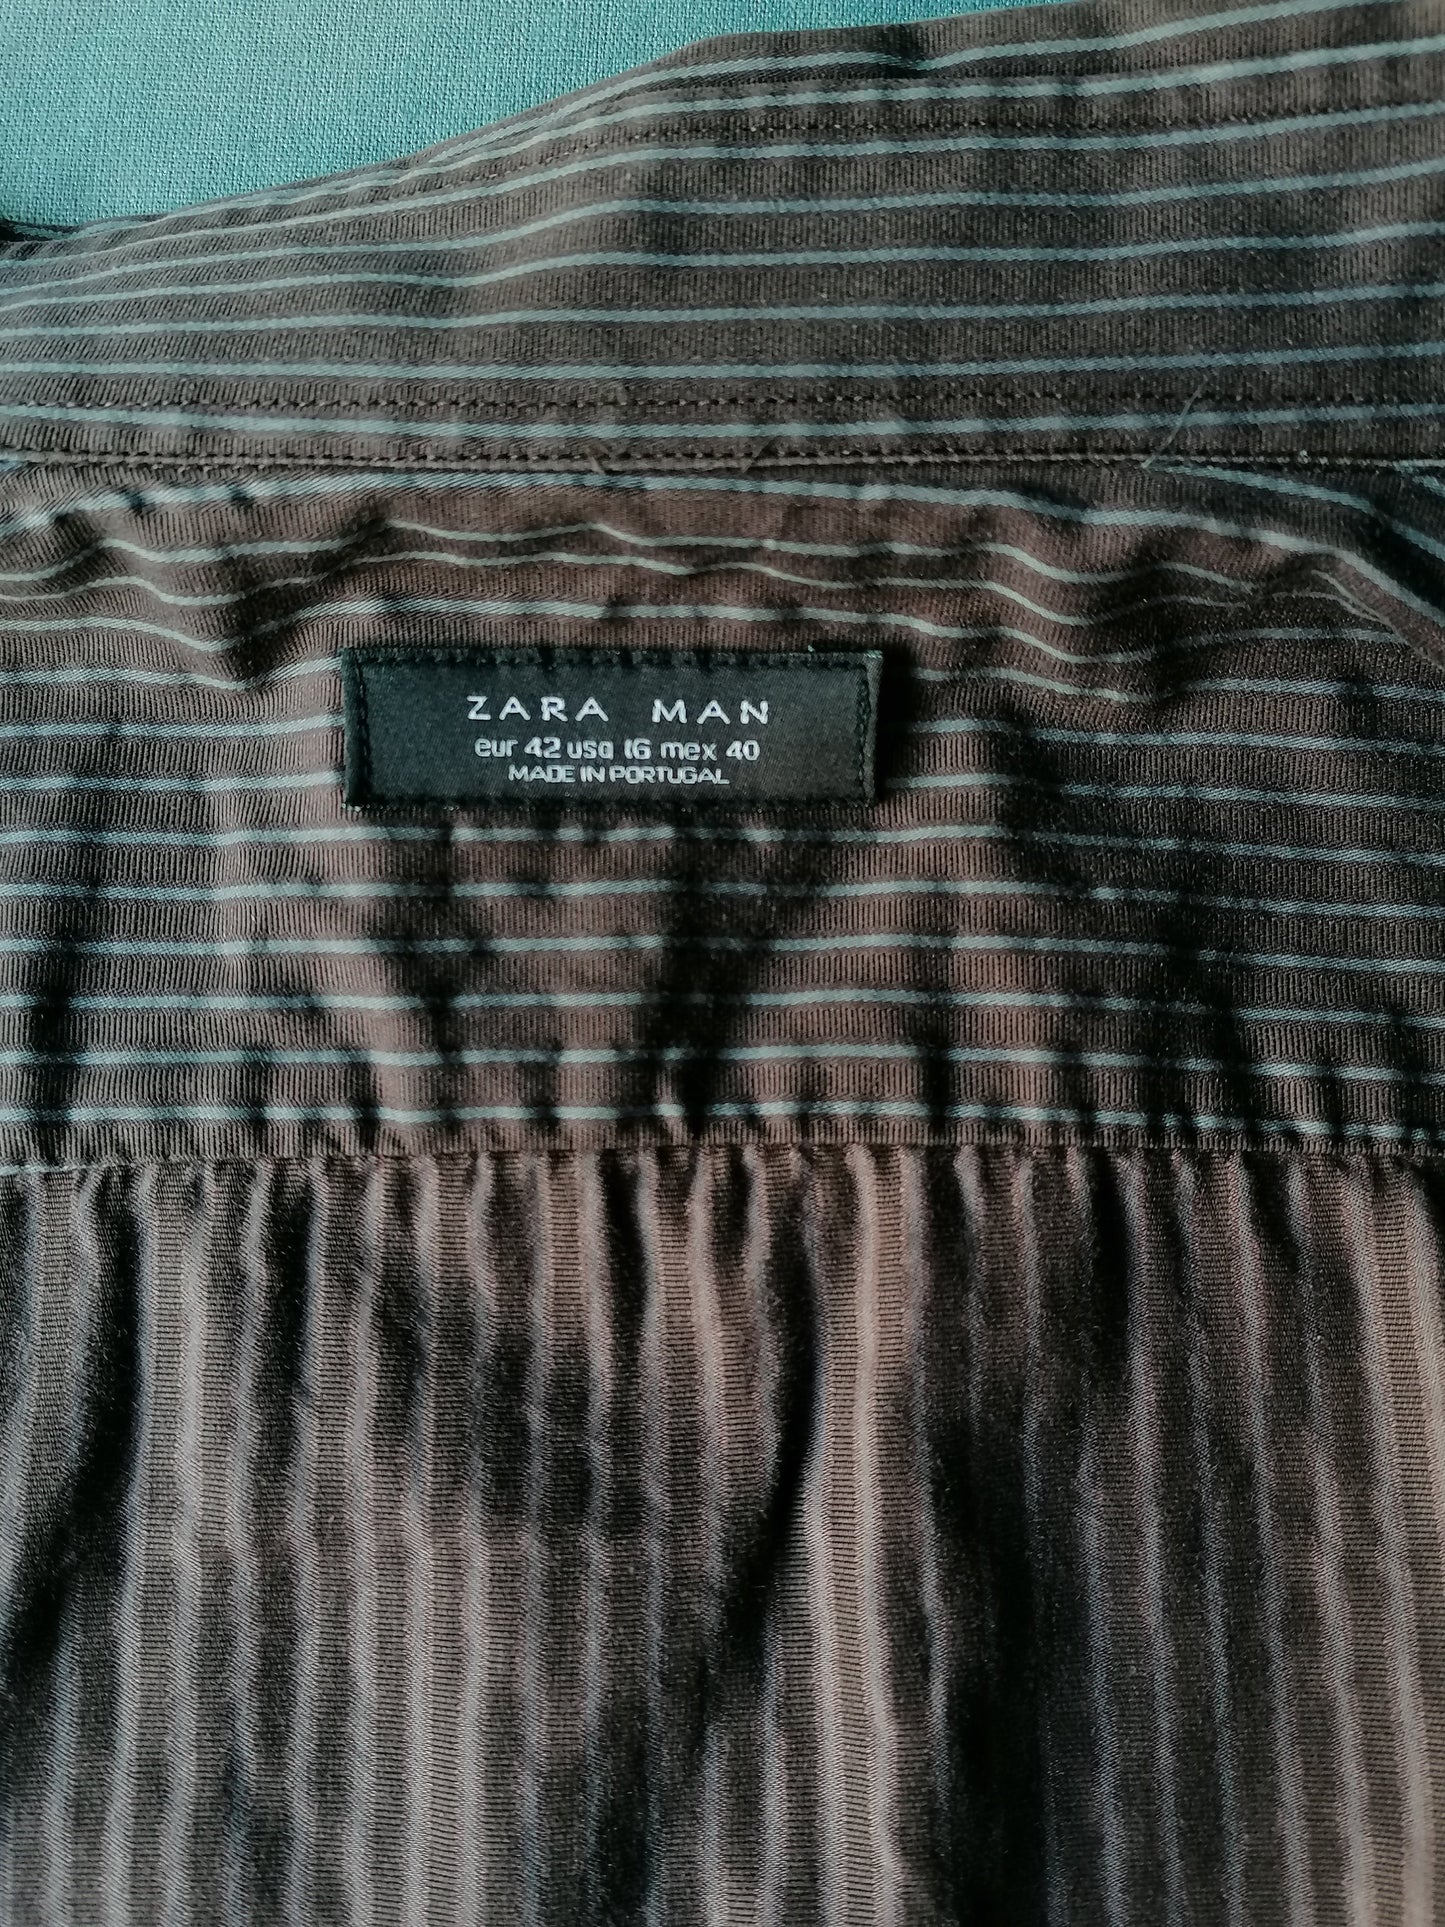 Zara Man overhemd. Bruin Grijs gestreept. Maat 42 / L